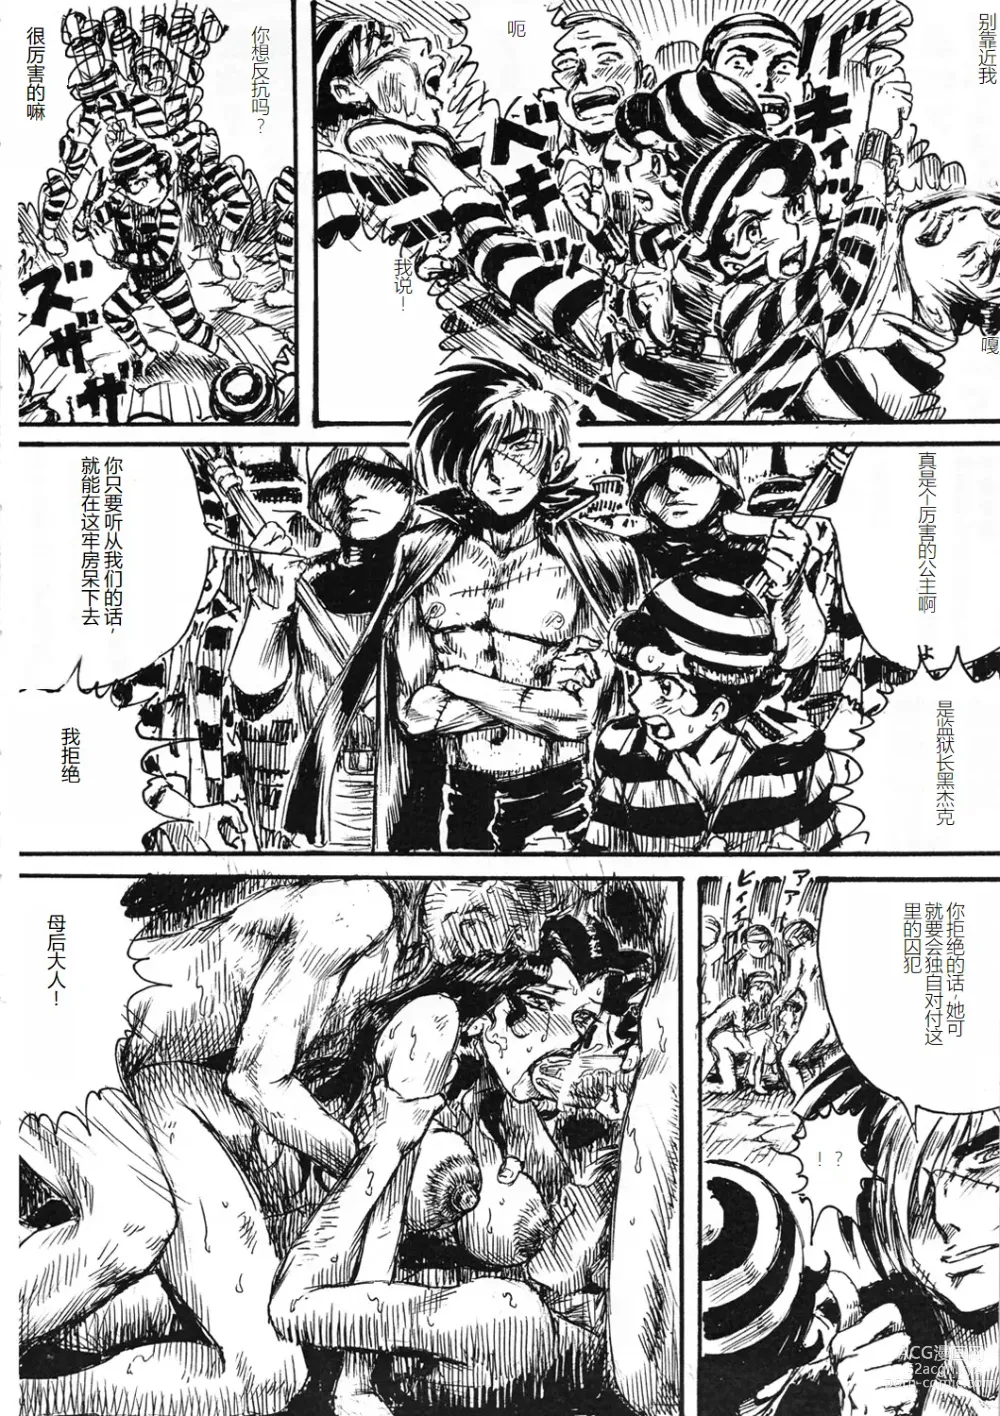 Page 33 of doujinshi Youjinbou Otaku Matsuri 8